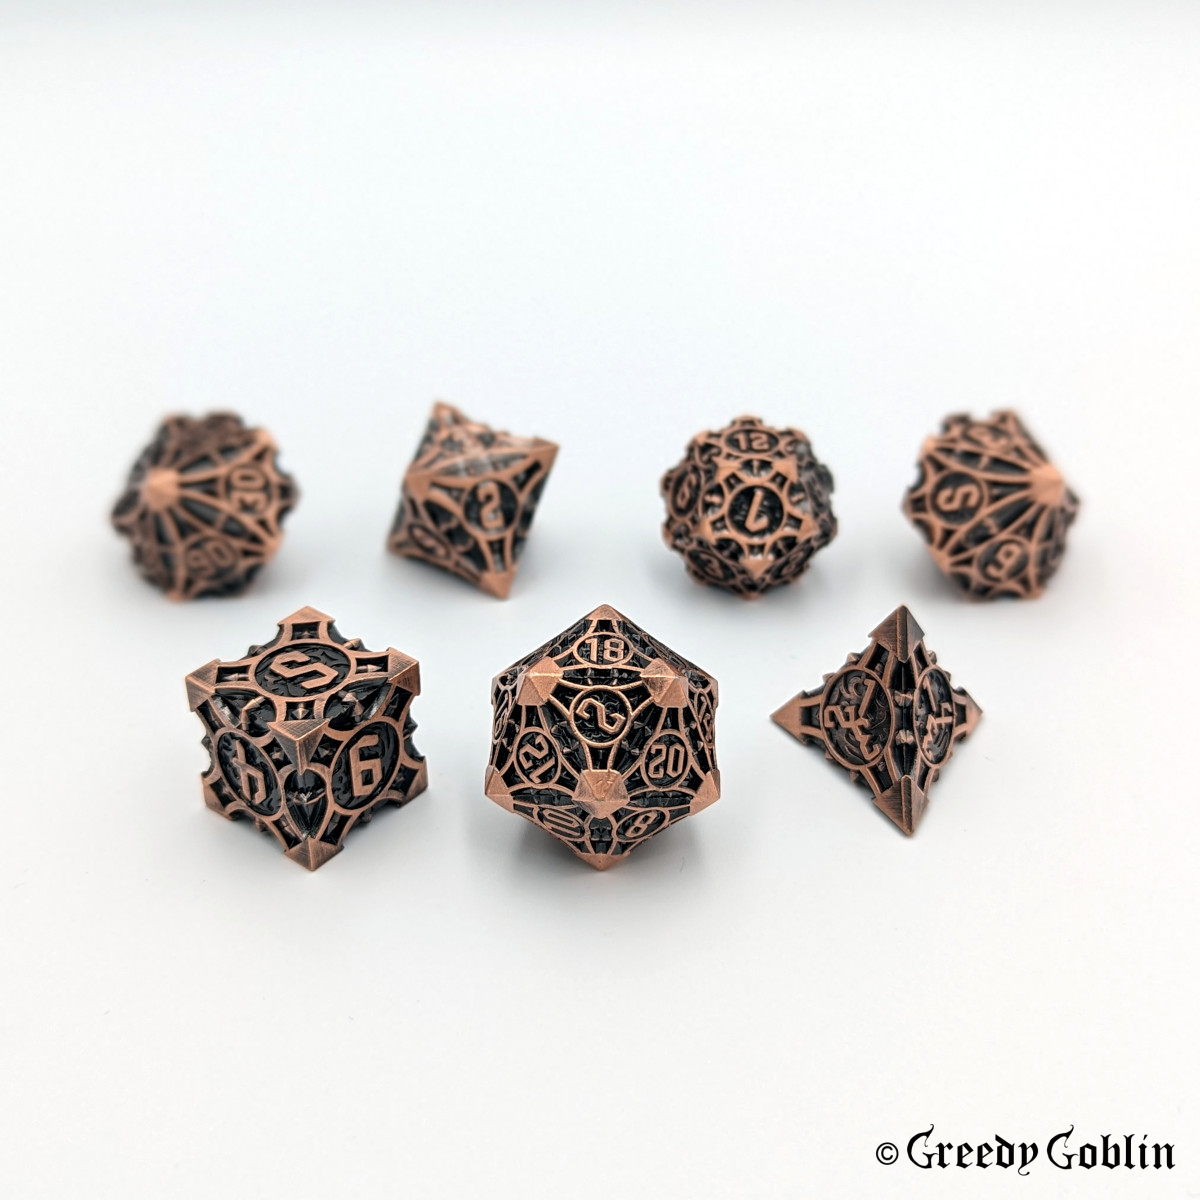 Copper metal Polydice set (D100, D8, D12, D10, D6, D20, D4) with black engravings.